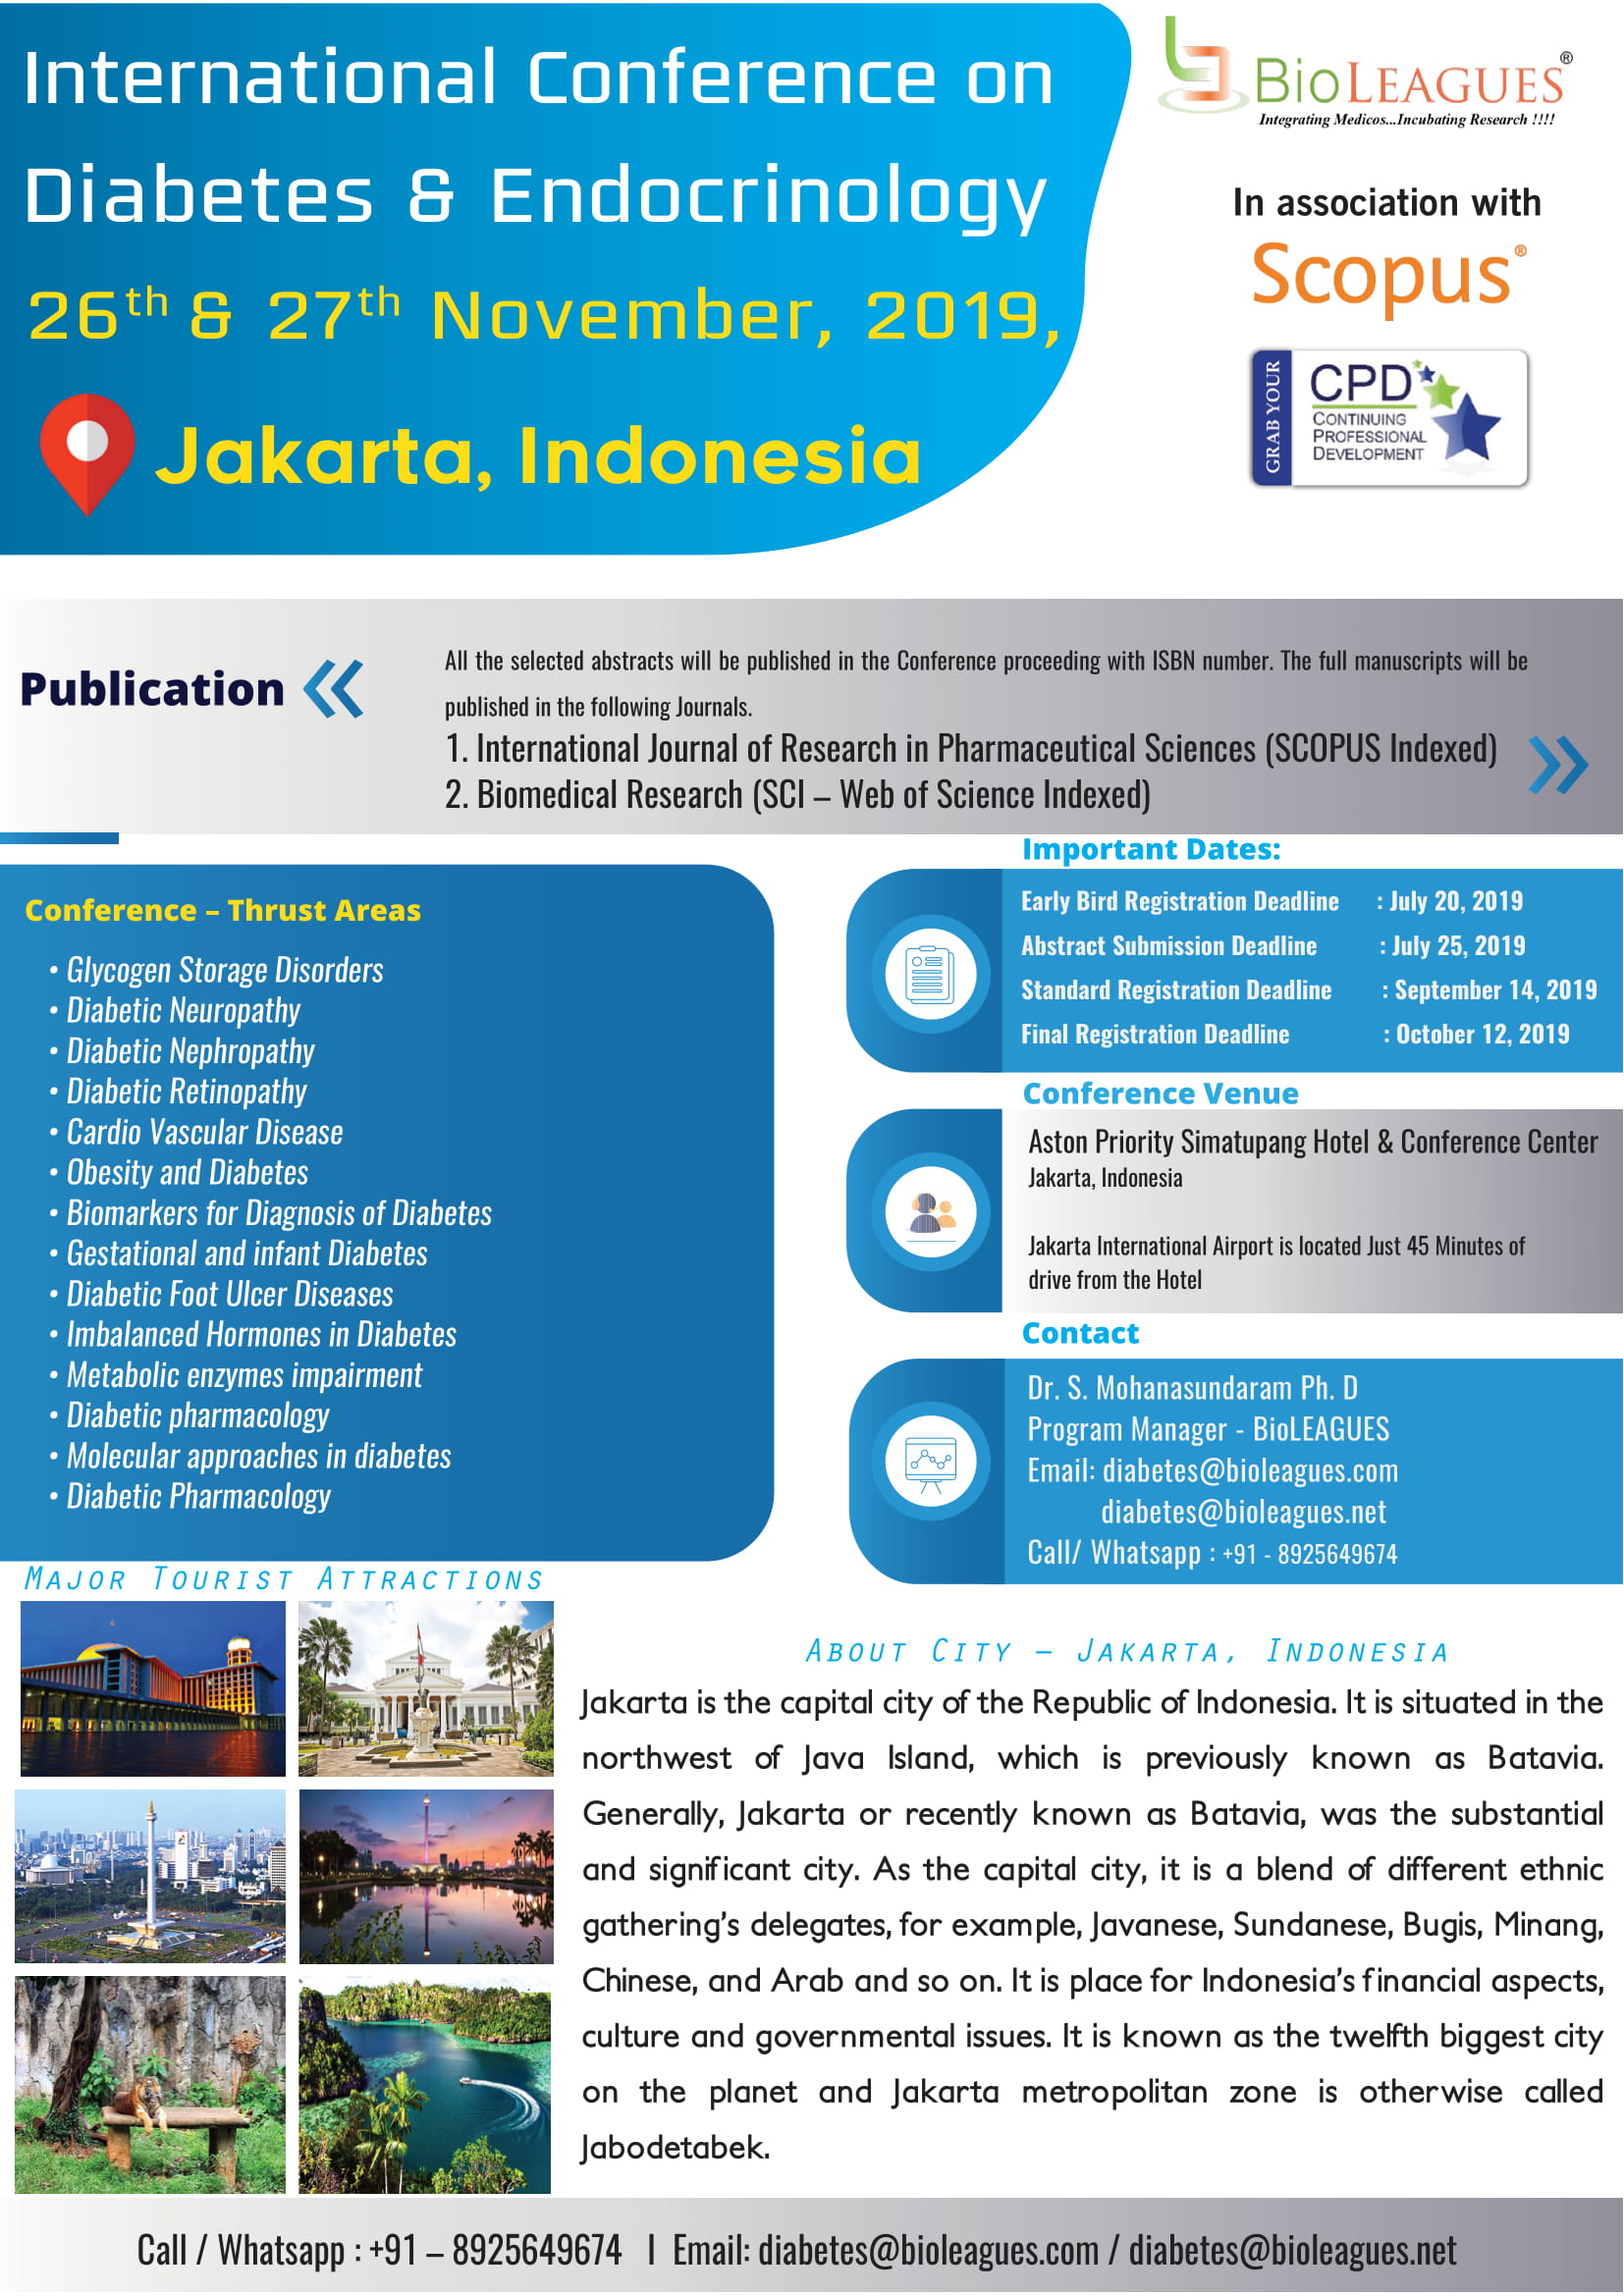 International Conference on Diabetes and Endocrinology, Daerah Khusus Ibukota, Jakarta, Indonesia